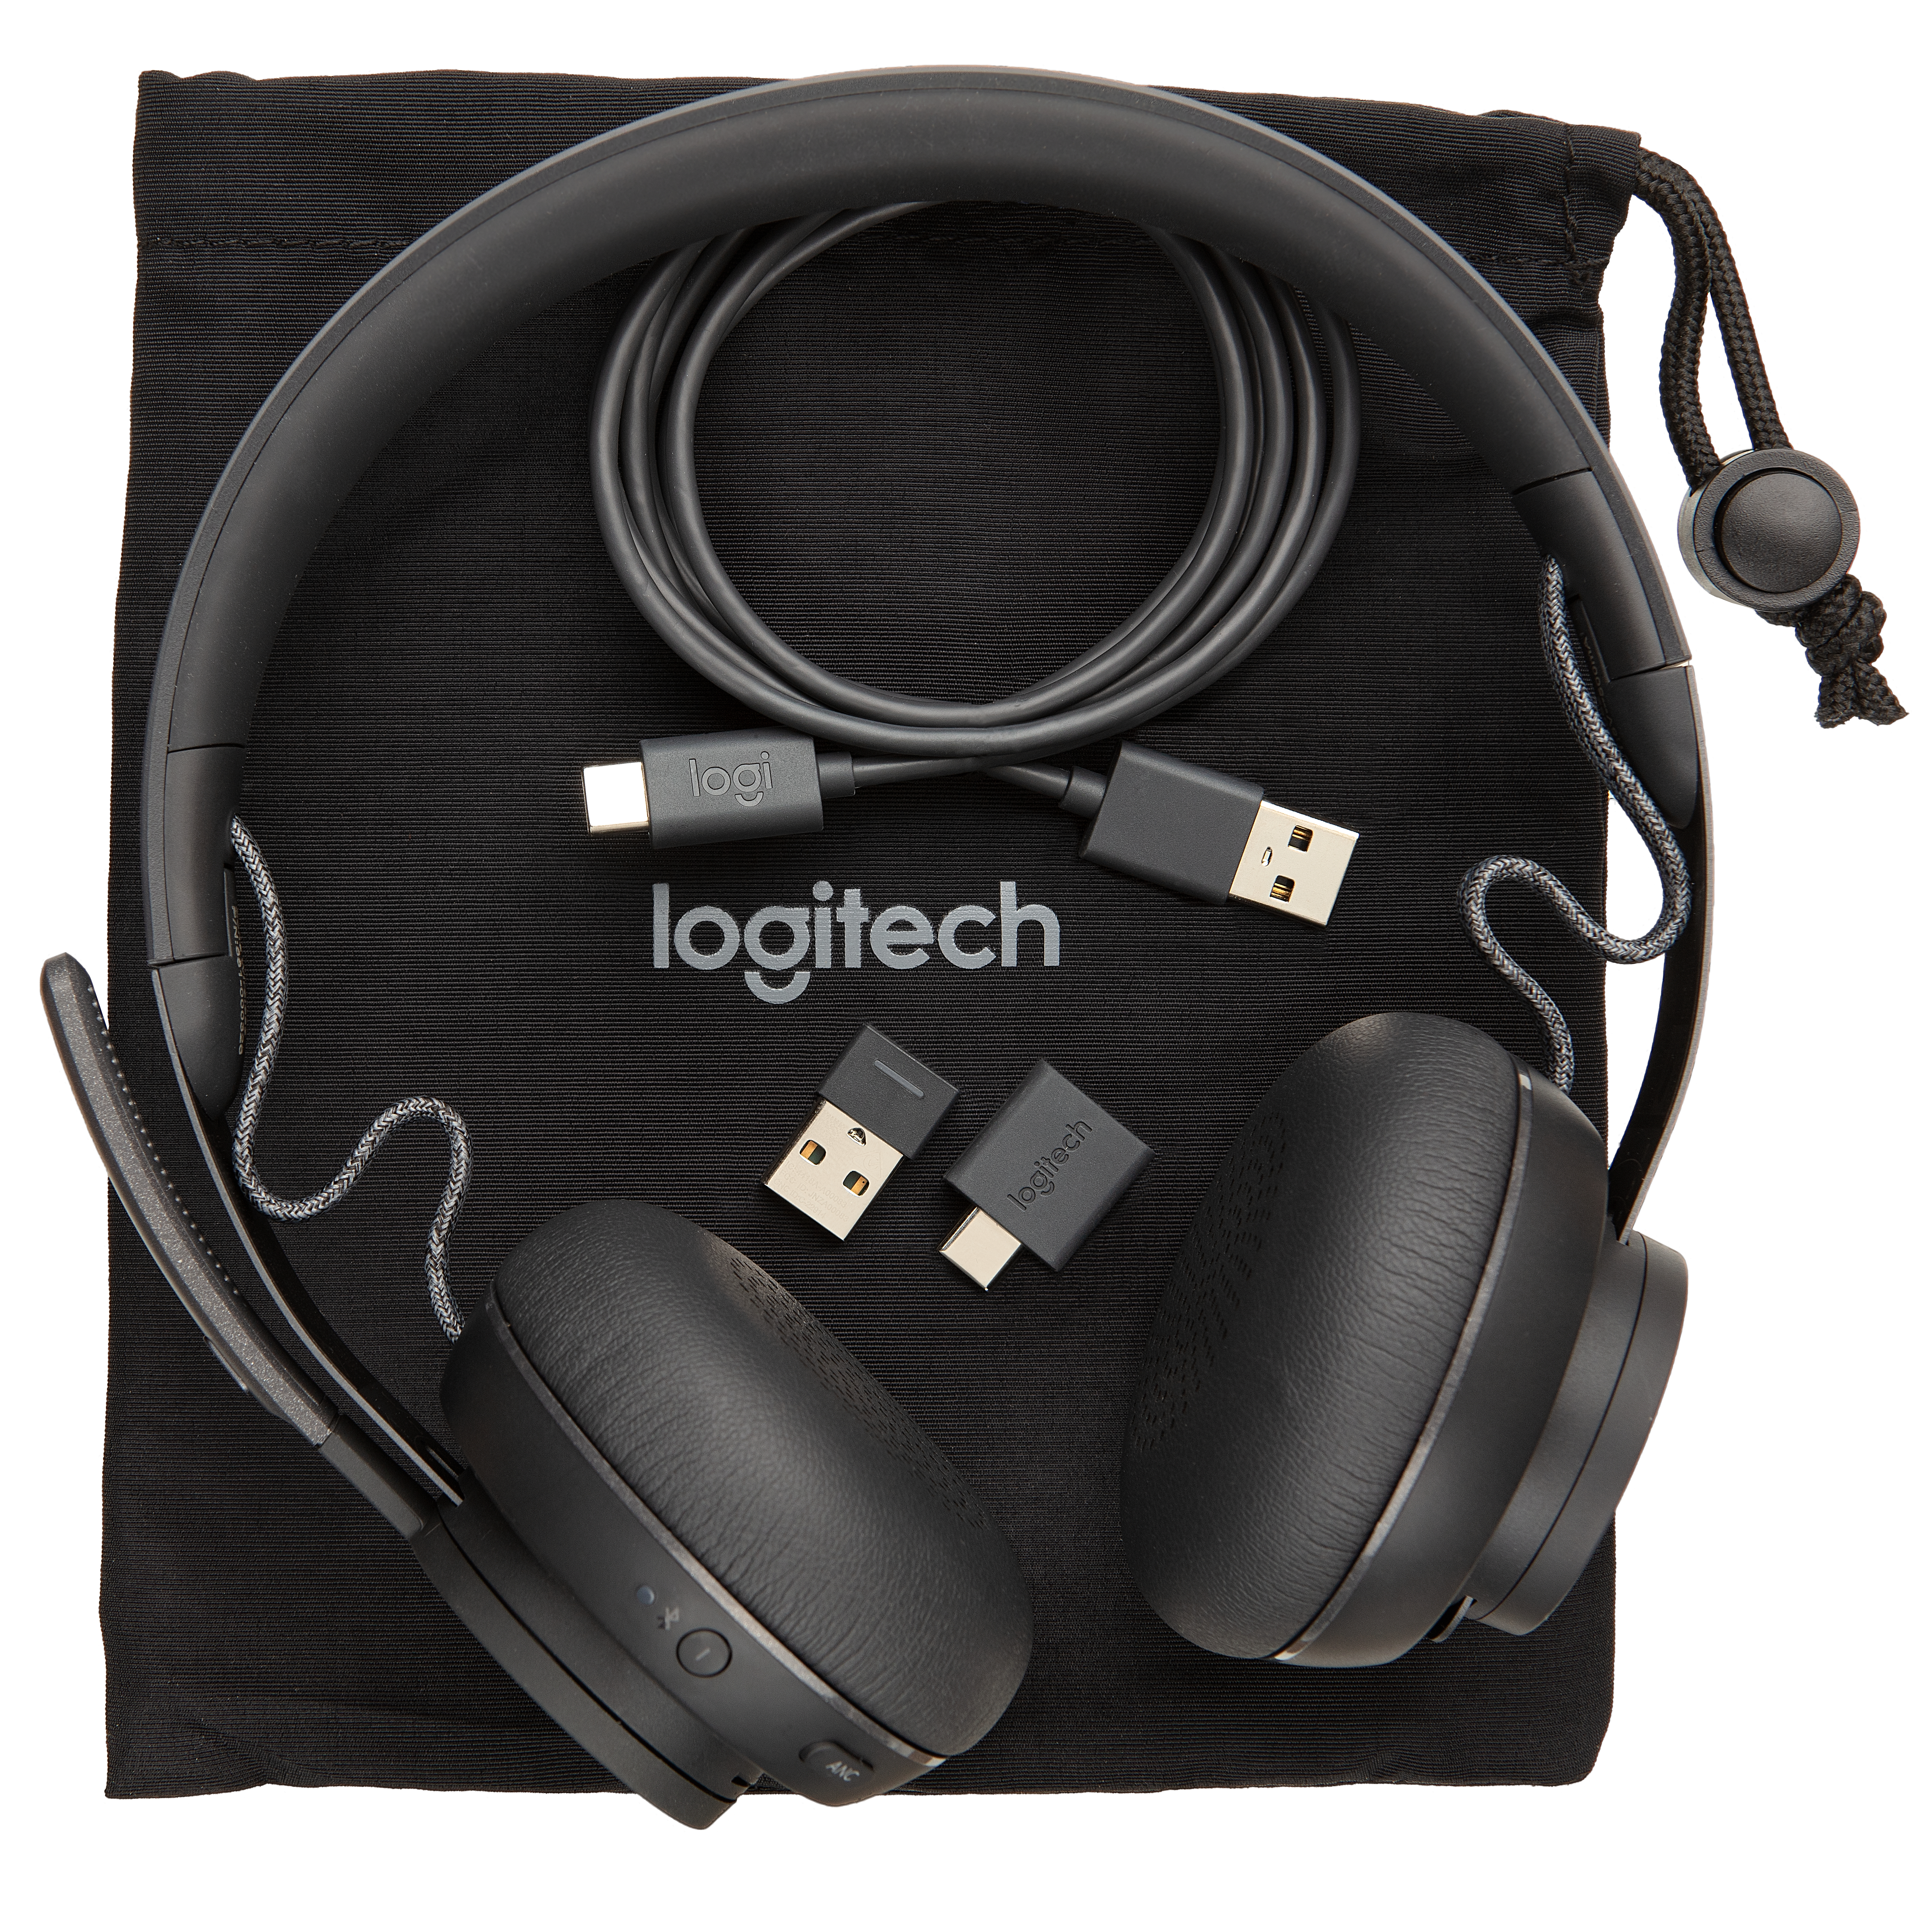 Logitech zone wireless teams headset